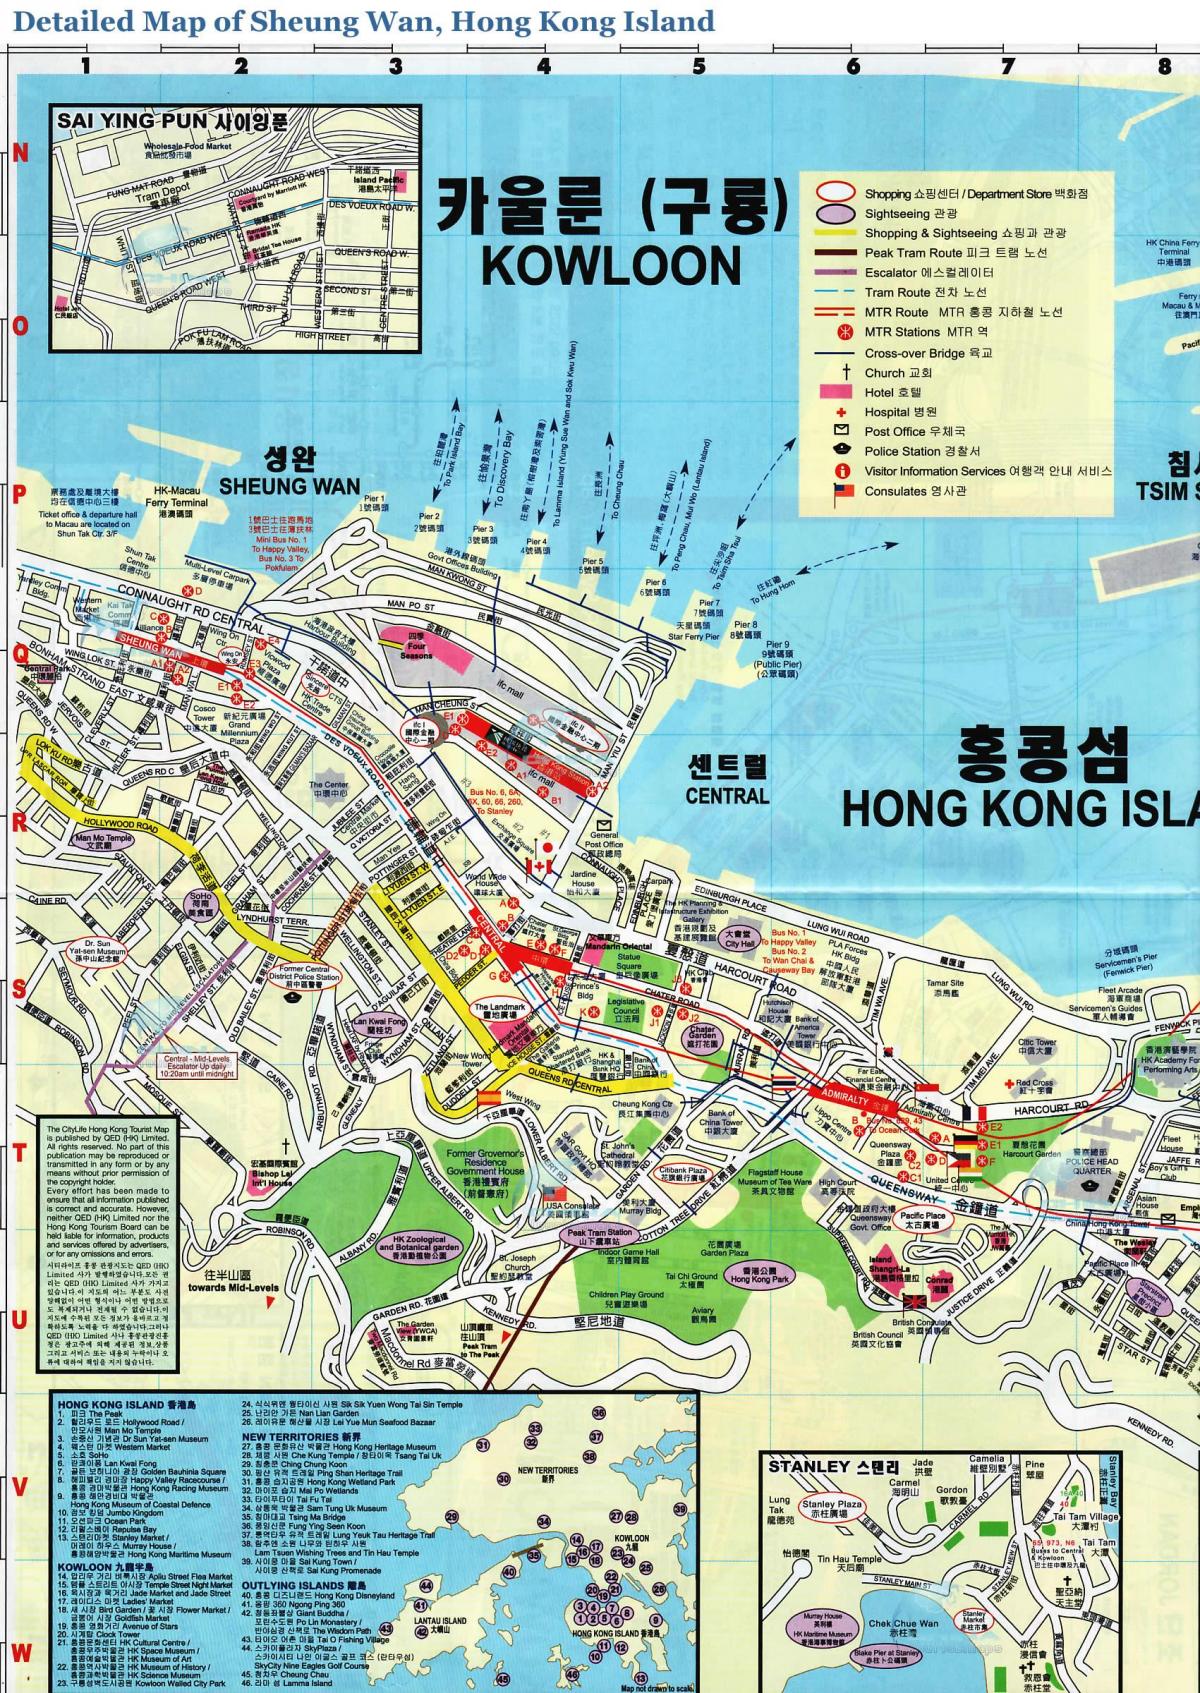 რუკა Sheung Wan, ჰონკონგში